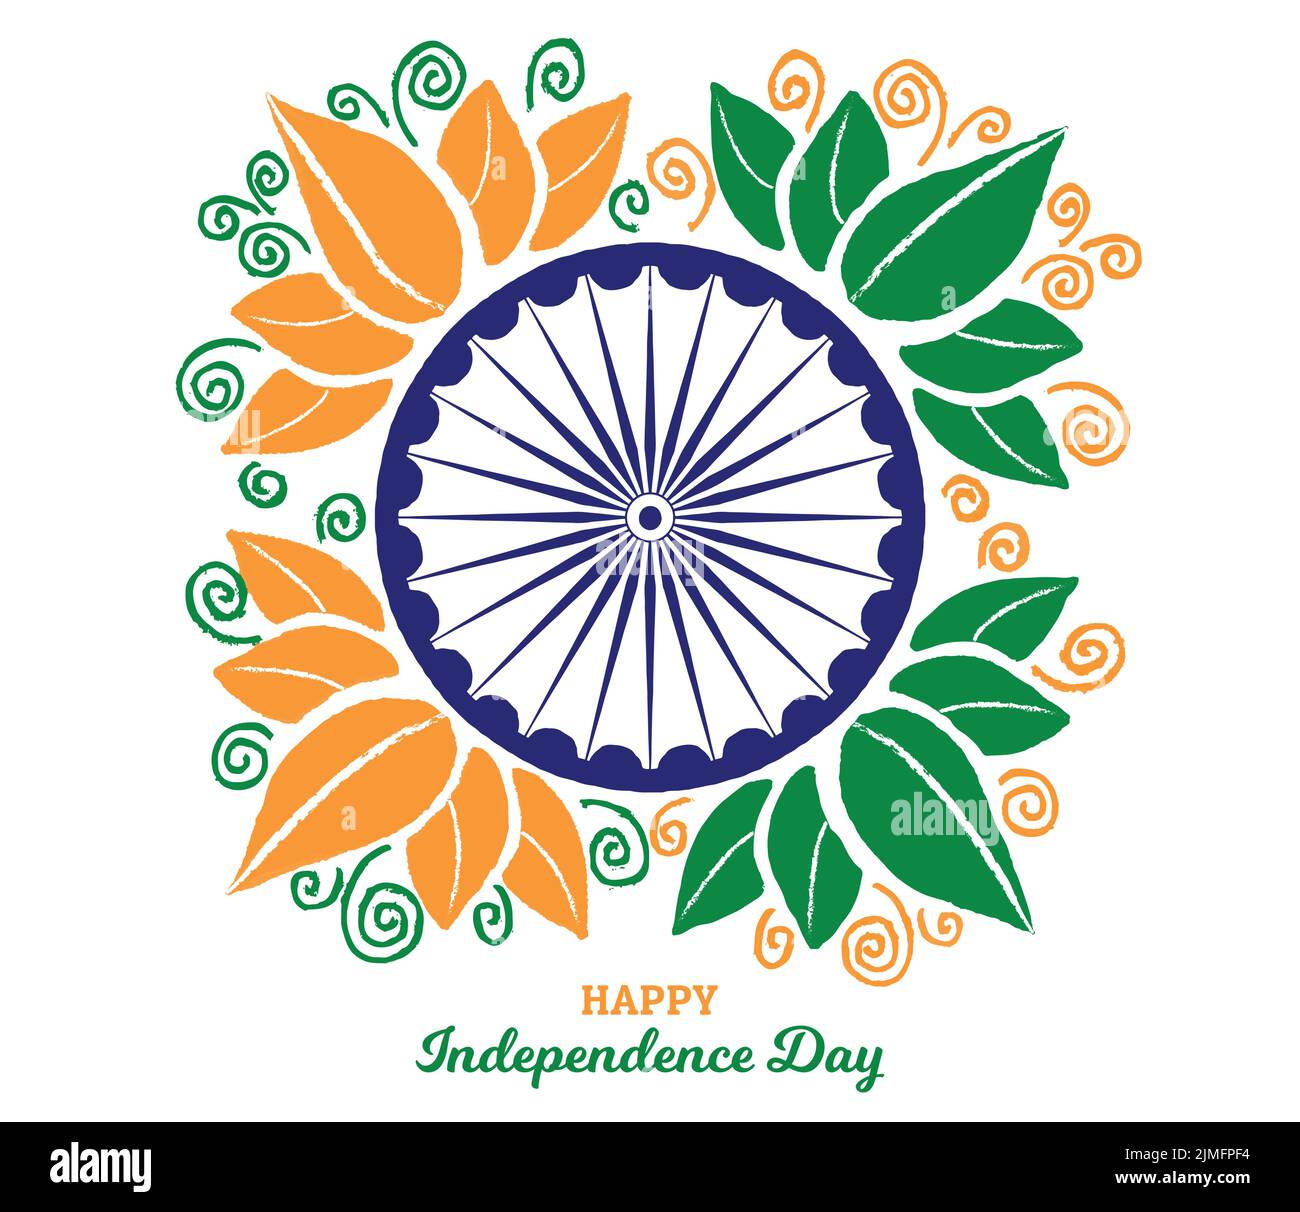 Happy Independence Day Handgezeichnete Blumen Abstraktes Poster Vektor Illustration. Nationalfeiertag In Indien, 15. August. Ashoka Chakra-Rad, Grunge-Textur Stock Vektor